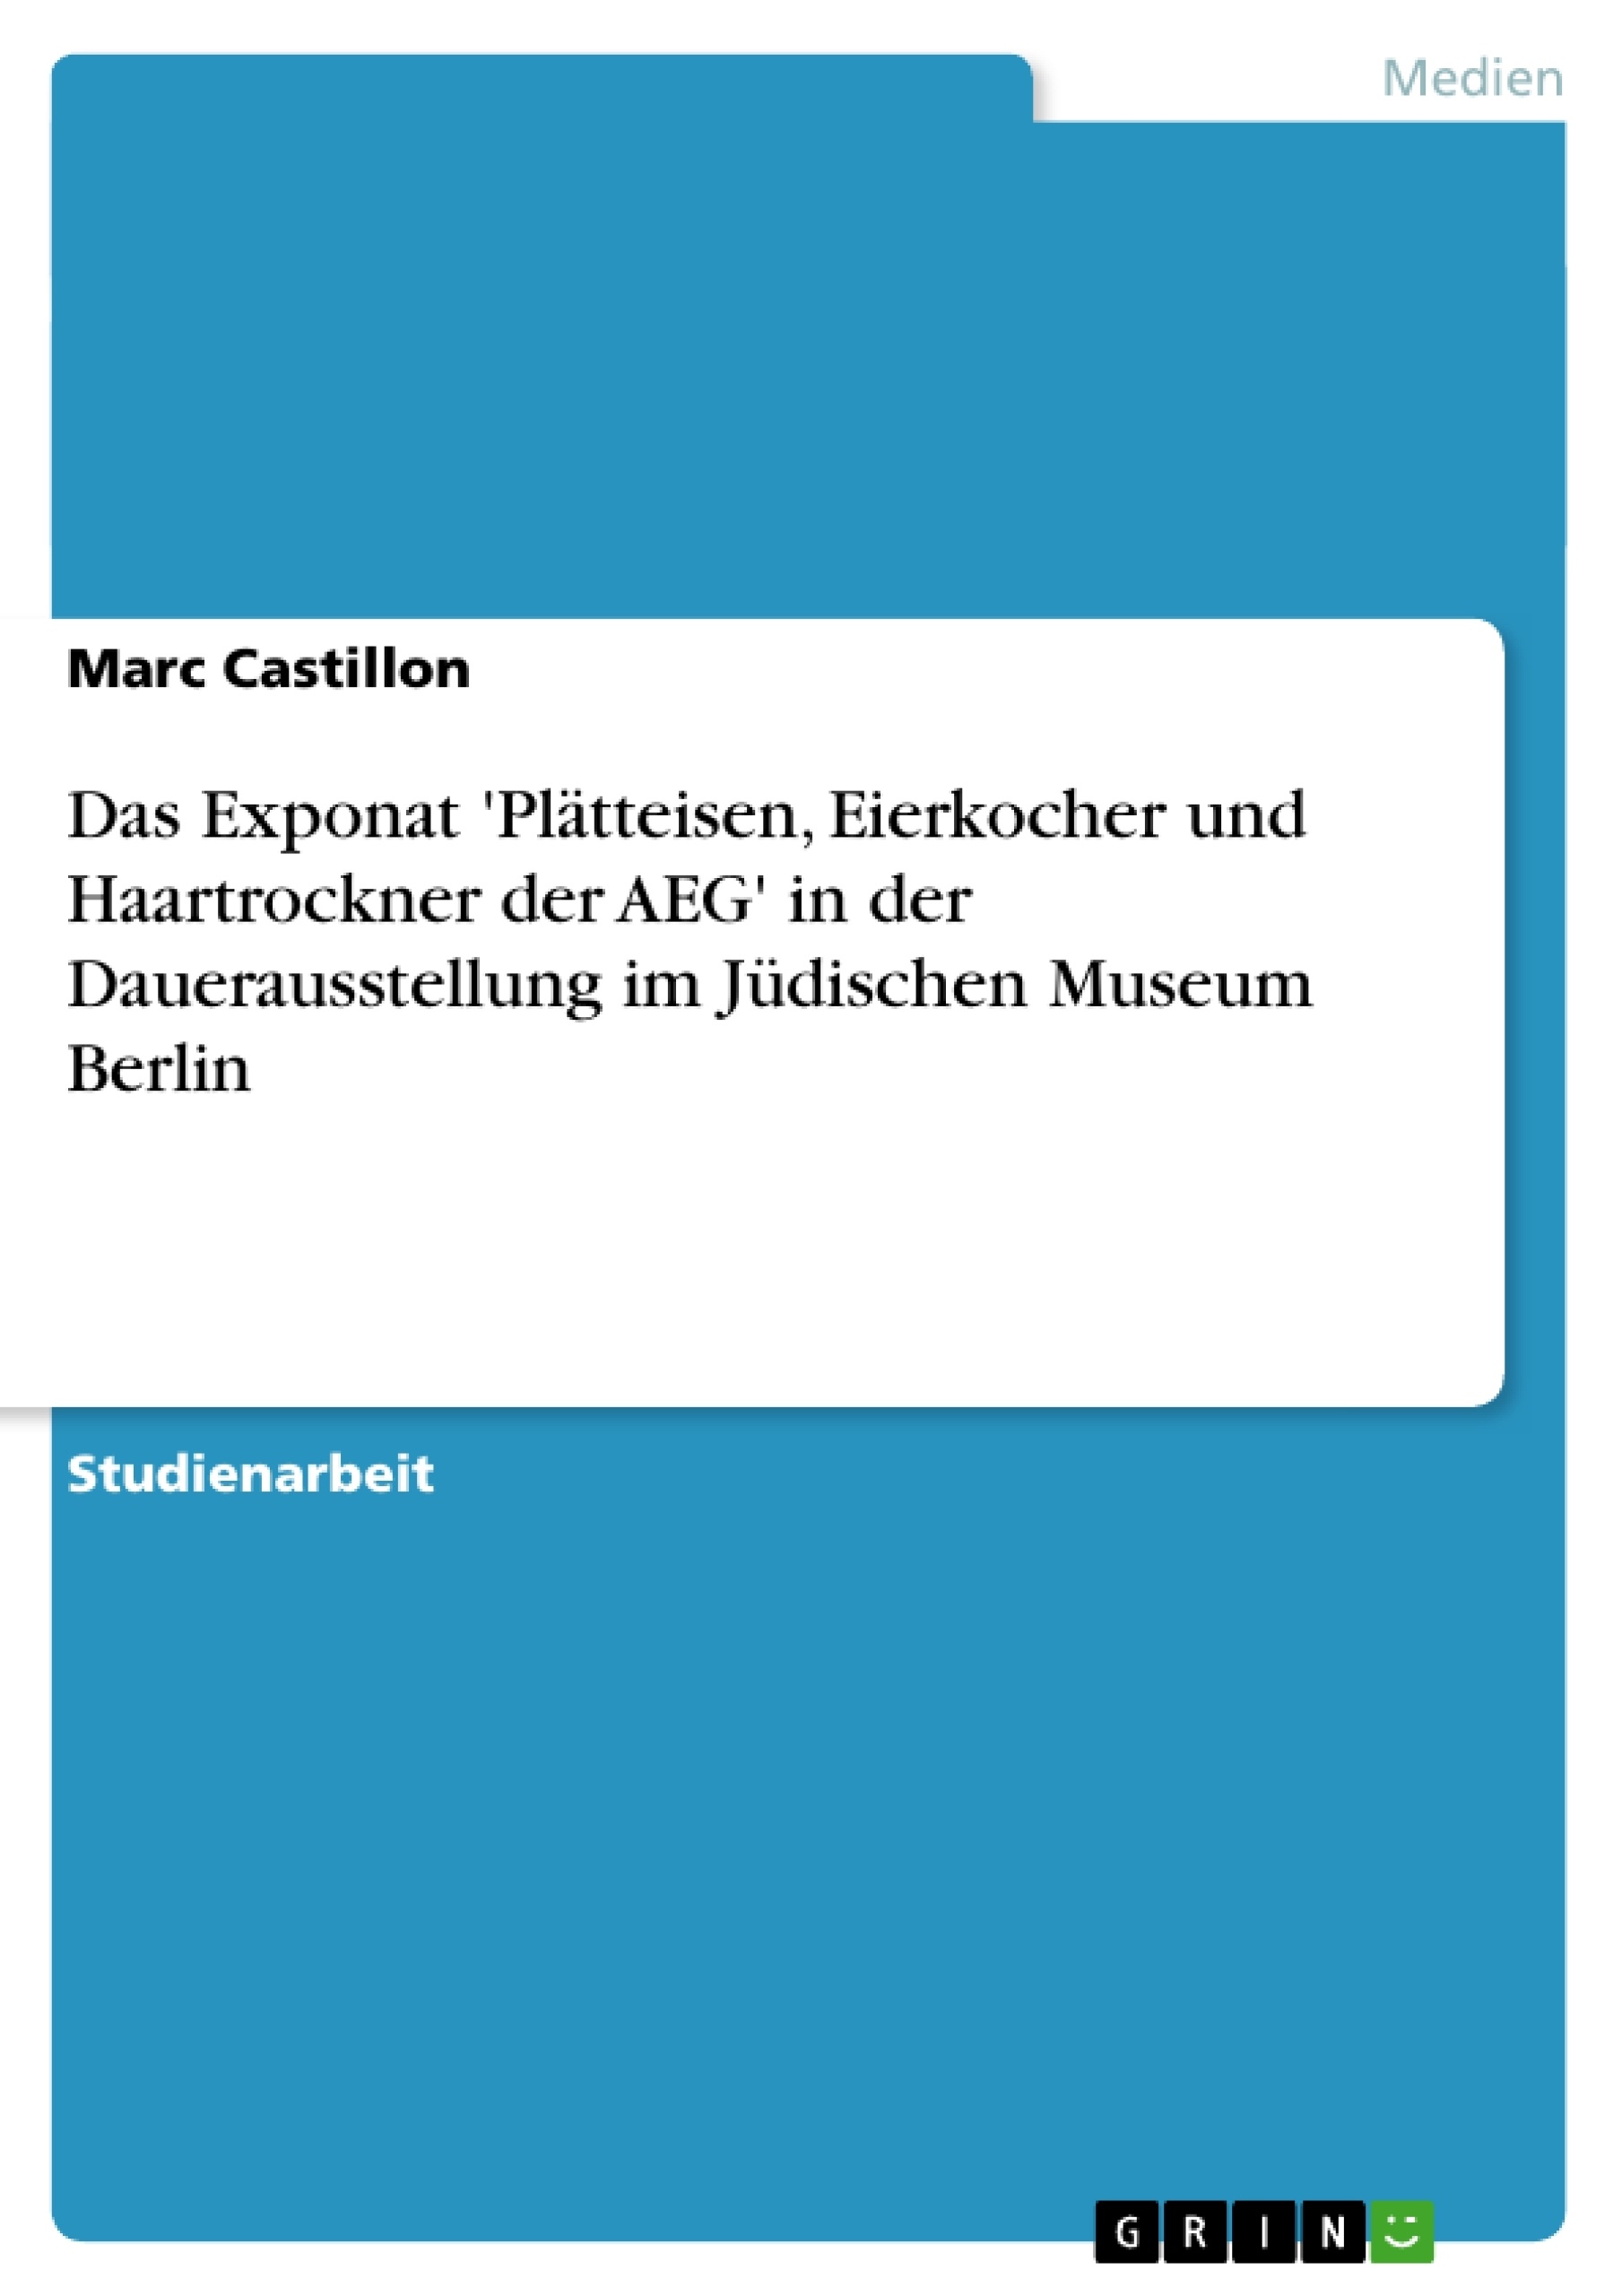 Title: Das Exponat  'Plätteisen, Eierkocher und Haartrockner der AEG'  in der Dauerausstellung im Jüdischen Museum Berlin